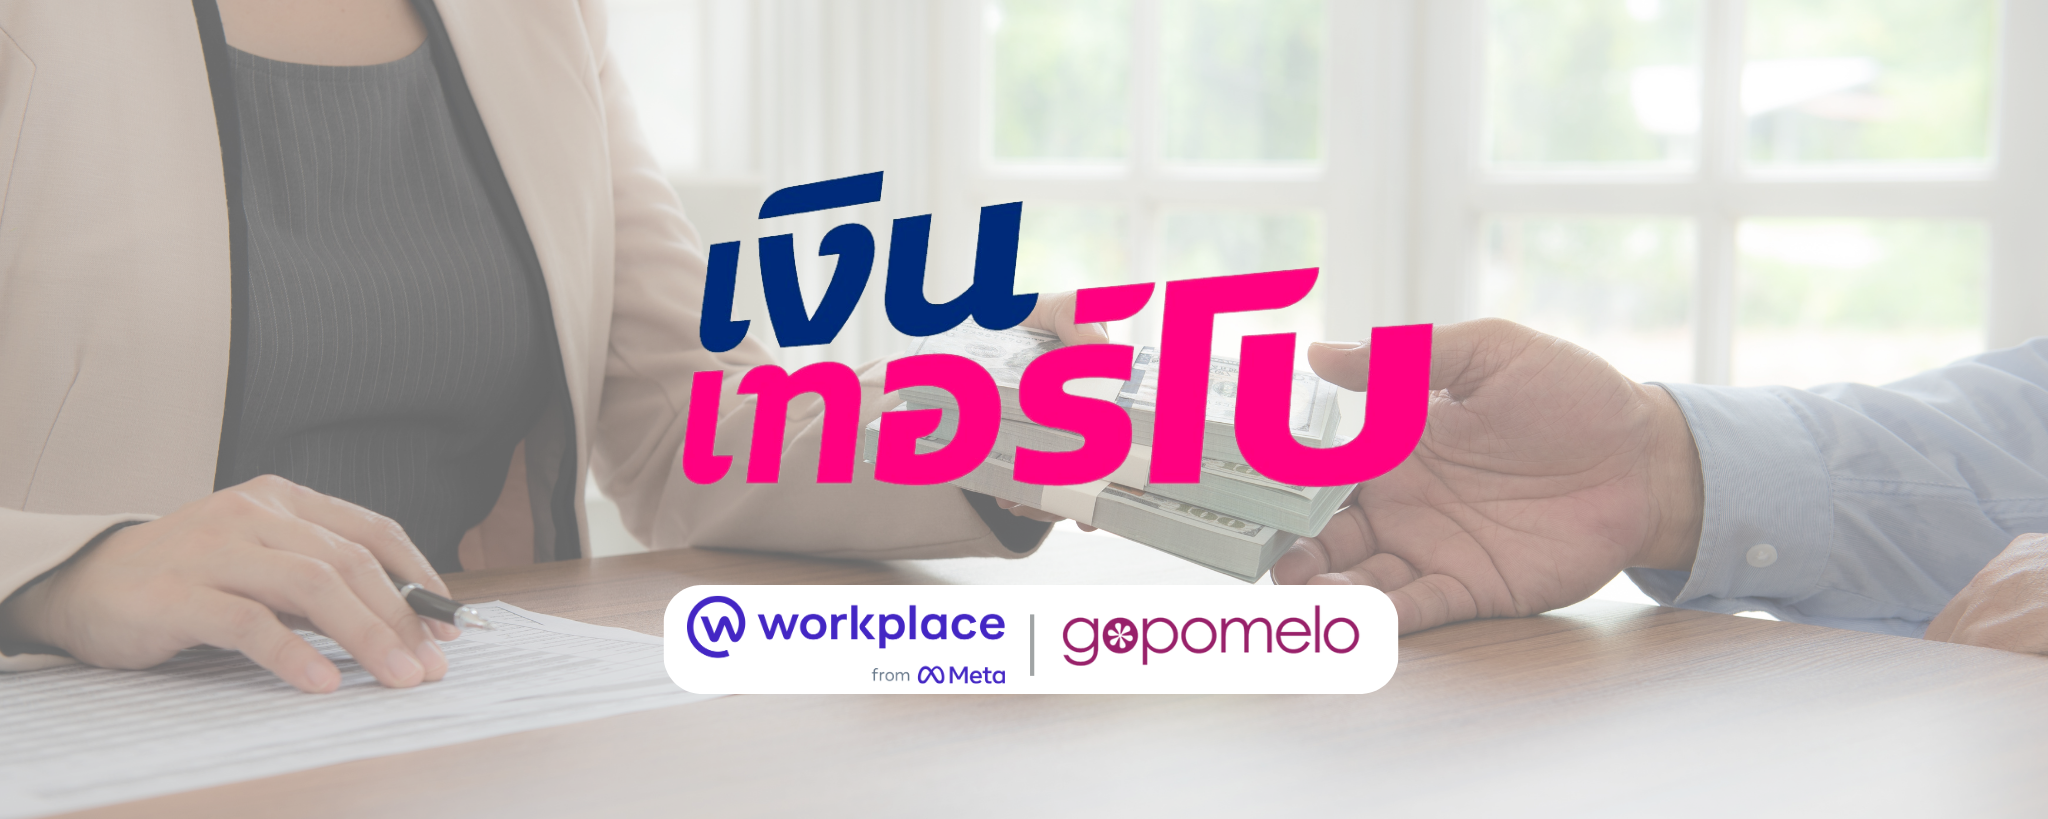 เงินเทอร์โบ ส่งเสริมการมีส่วนร่วมของพนักงานทั้งองค์กรด้วย Workplace from Meta | GoPomelo Customer Story